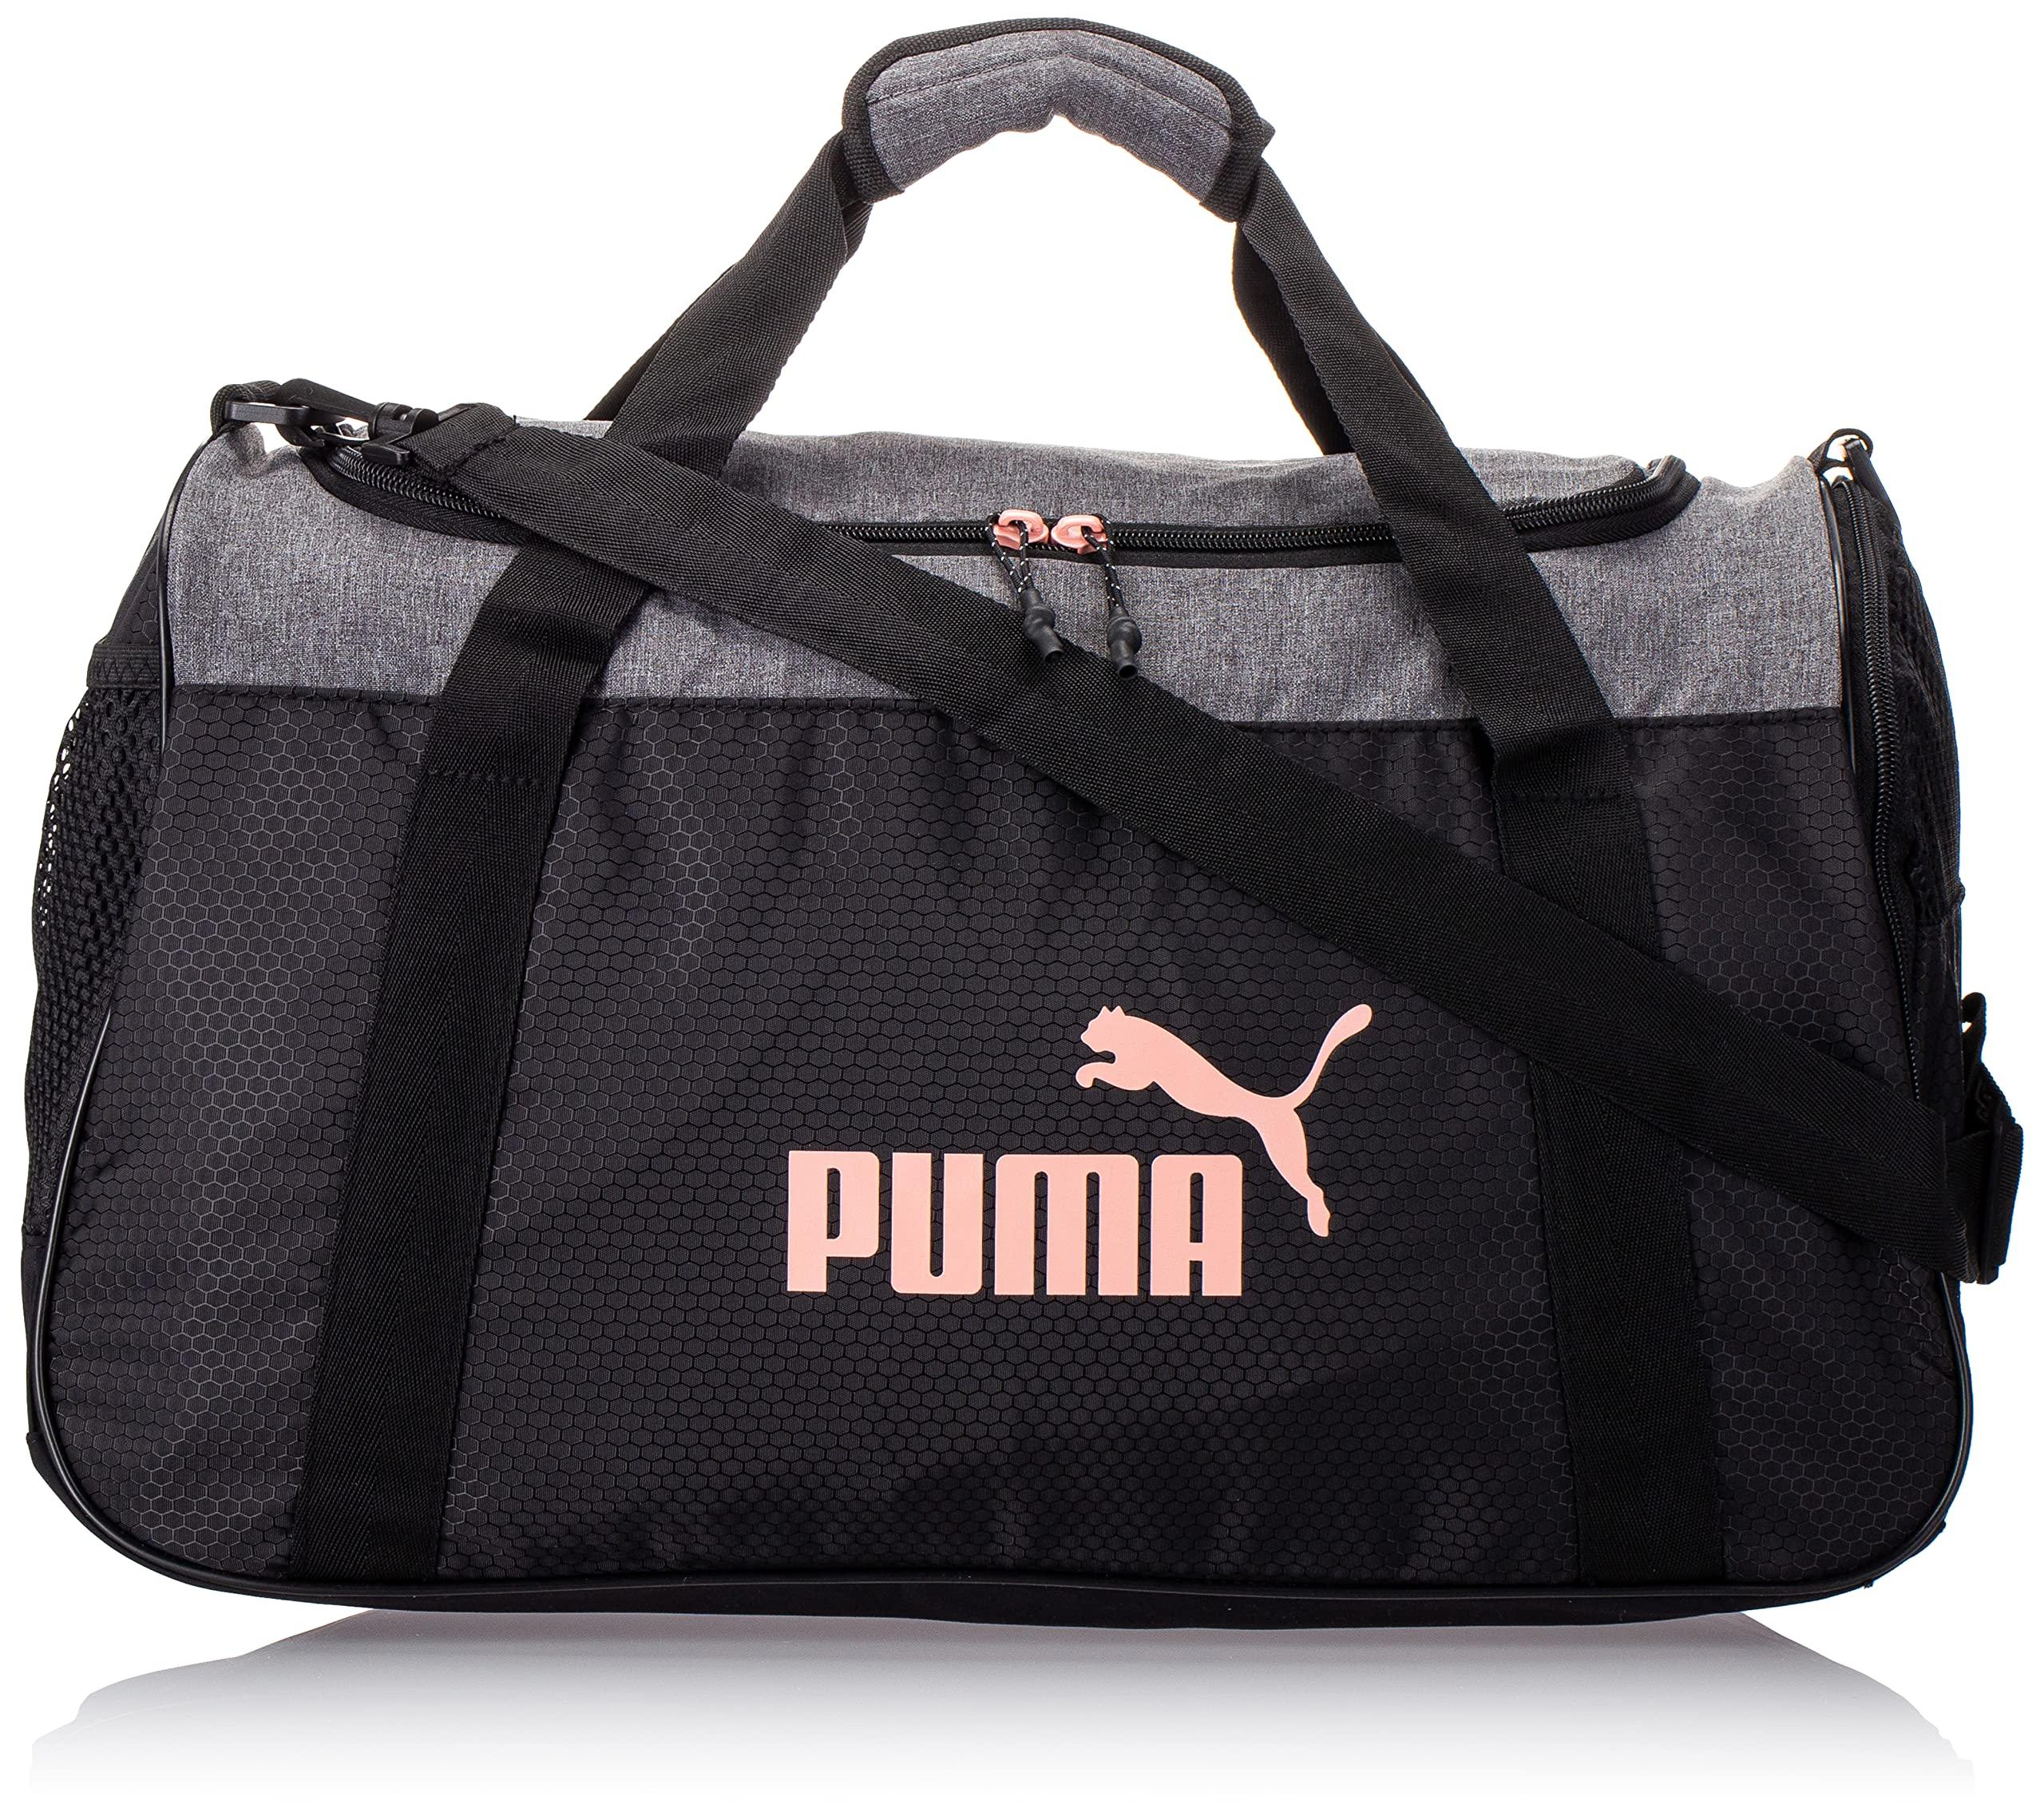 PUMA Defense Duffel Bag in Pink/Grey (Black) - Save 23% | Lyst